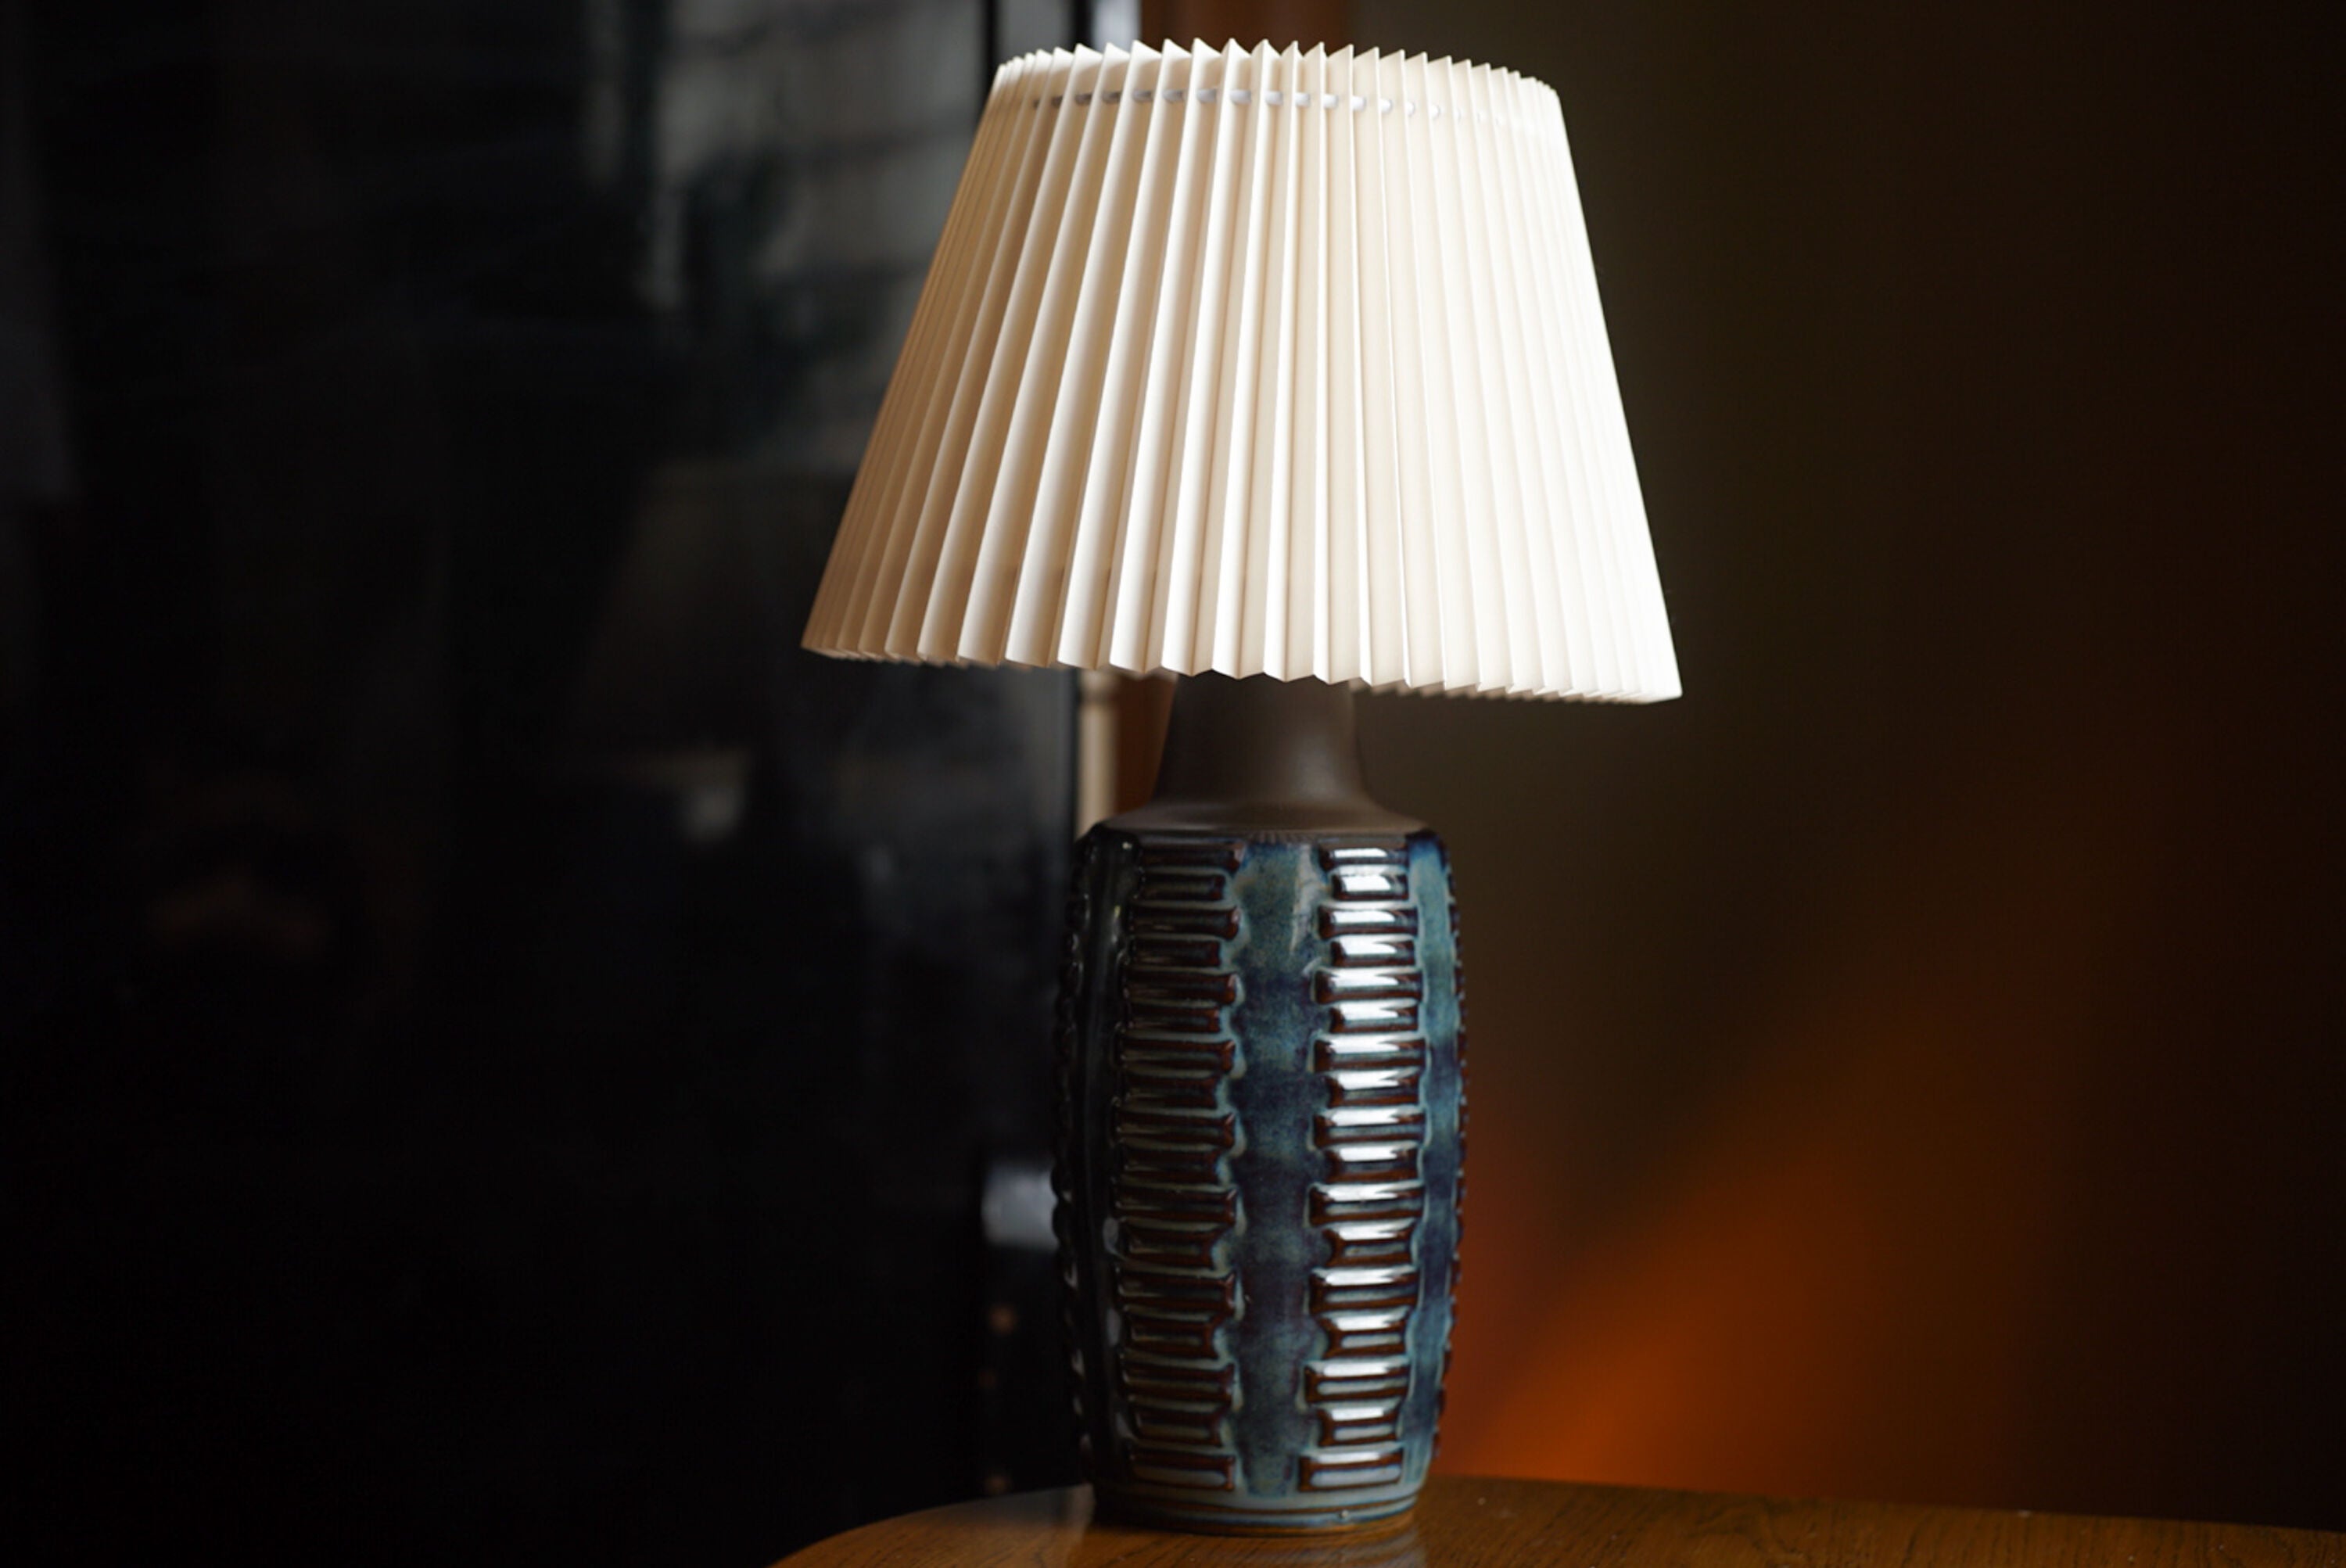 Une lampe de table en grès fabriquée à la main dans les années 1960. Søholm est situé sur l'île de Bornholm au Danemark.

Estampillé et signé sur la base.

Vendu sans abat-jour. La hauteur comprend la douille. Entièrement fonctionnel et en très